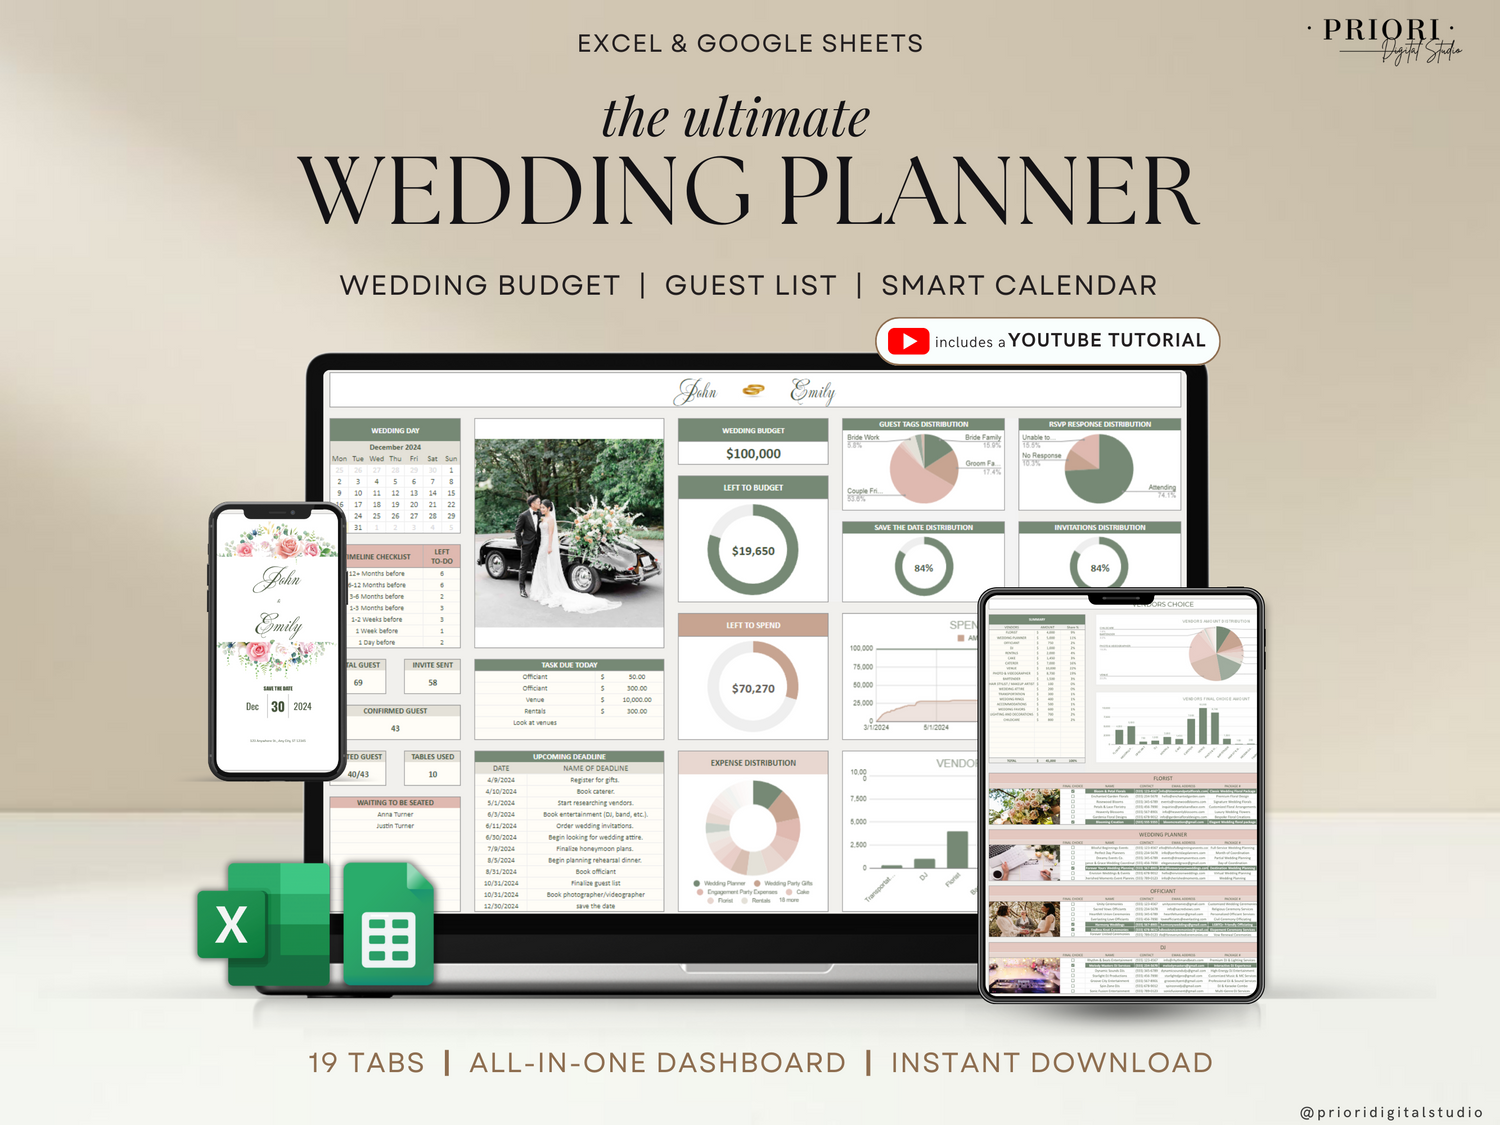 Wedding Planner Spreadsheet Wedding Budget Tracker Wedding Timeline Checklist Guest List Tracker Wedding Itinerary Seating Plan Wedding Gift Green Rosy Sage